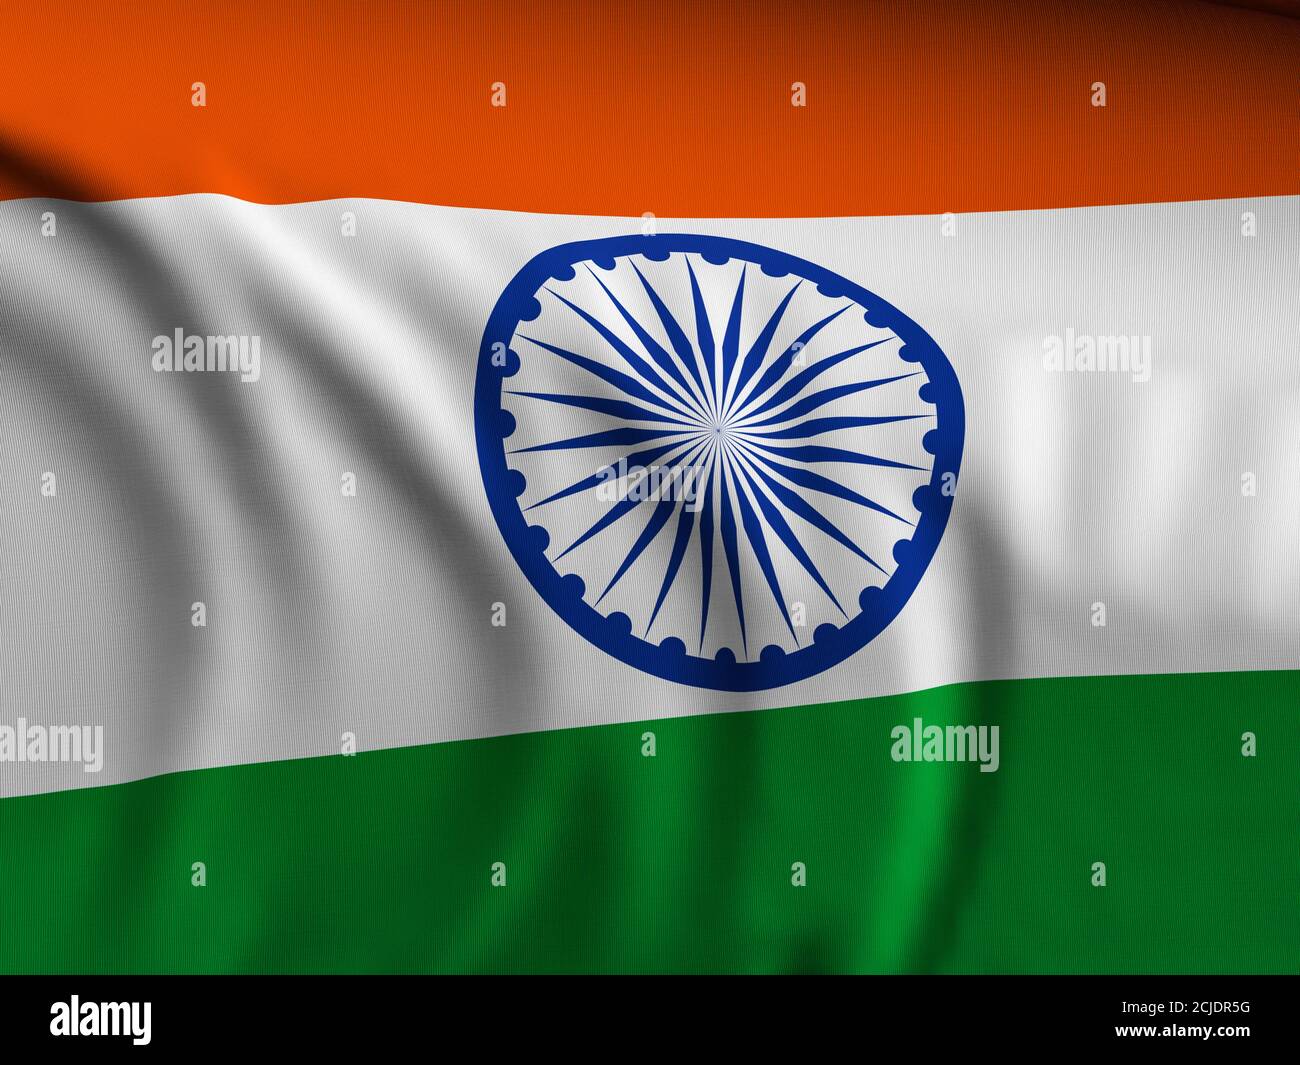 Waving close-up India flag background. 3d illustration Stock Photo - Alamy